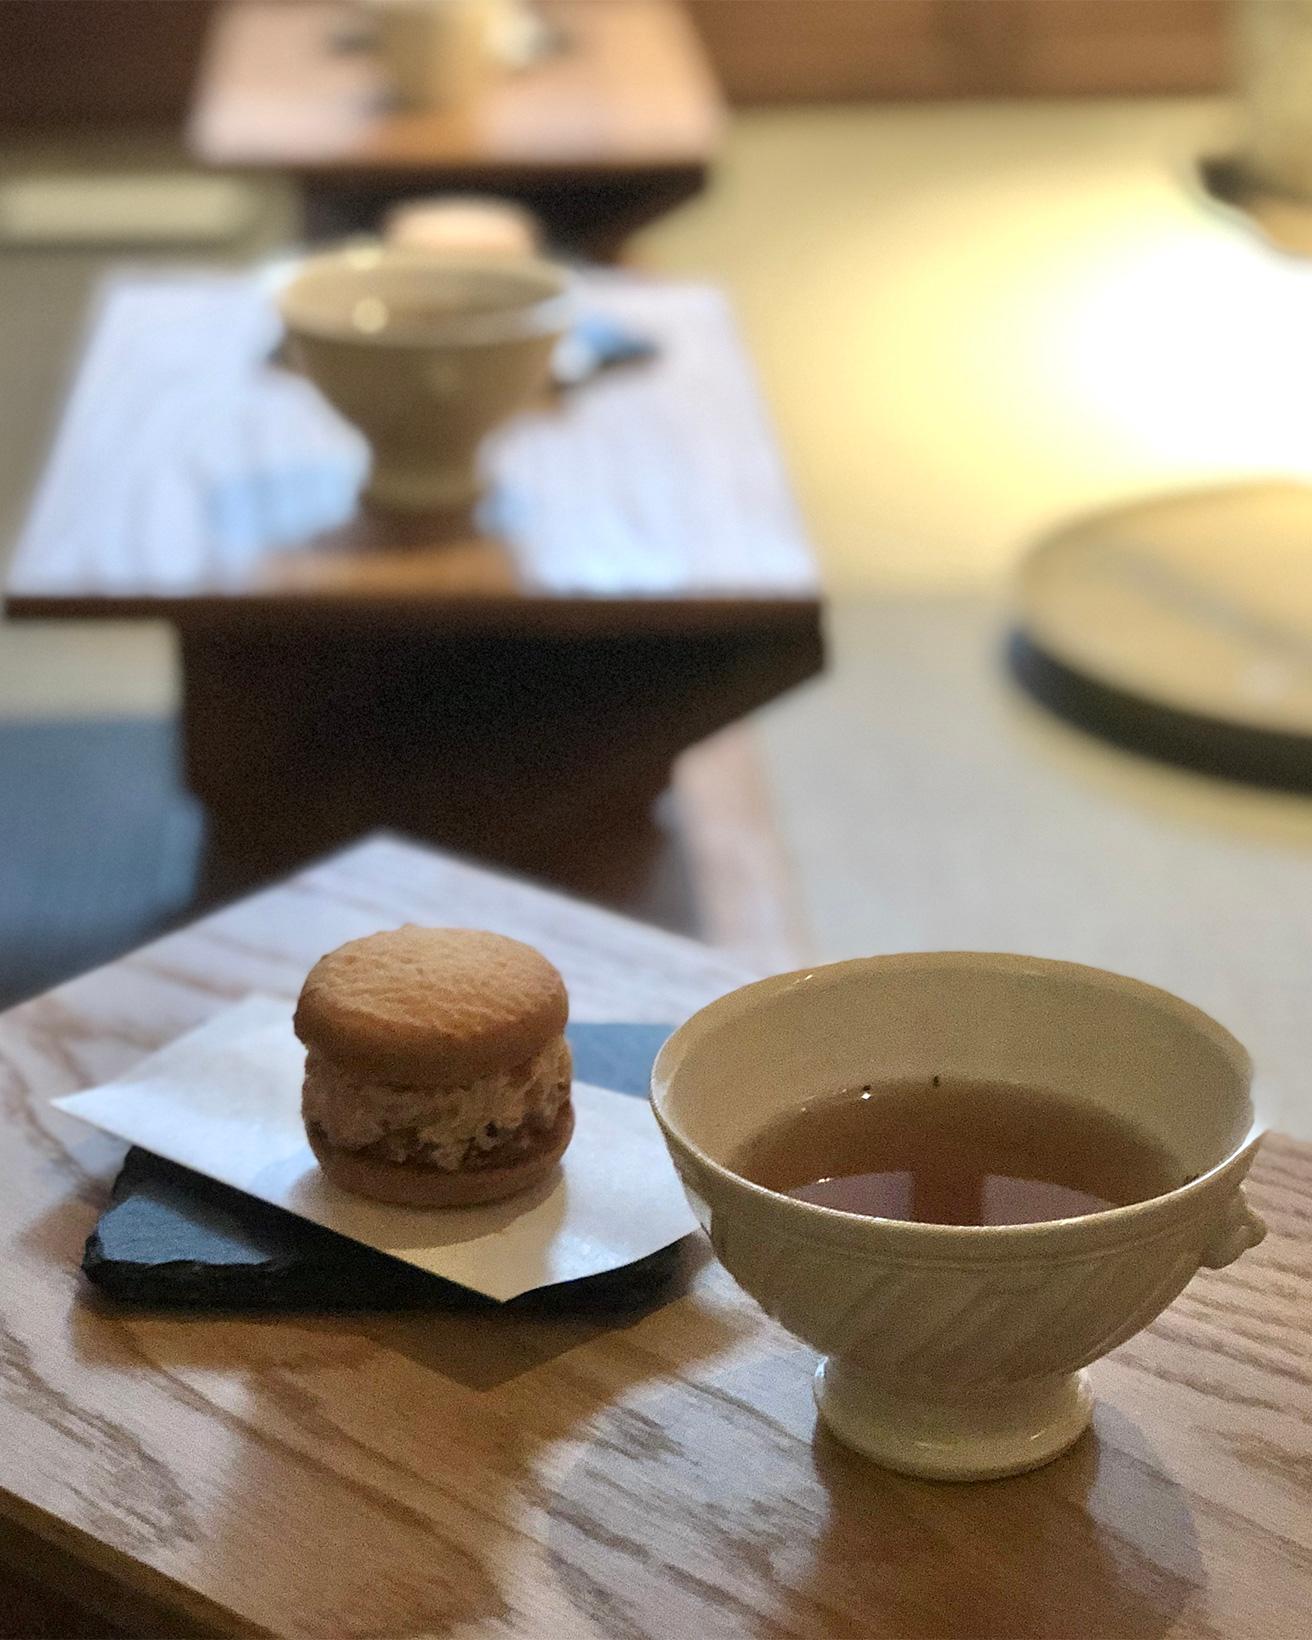 三種の日本茶にあう三種のオリジナル菓子をペアリングする体験。アンティーク調の器で供されるほうじ茶にはしっかりした味わいの茶菓子を。